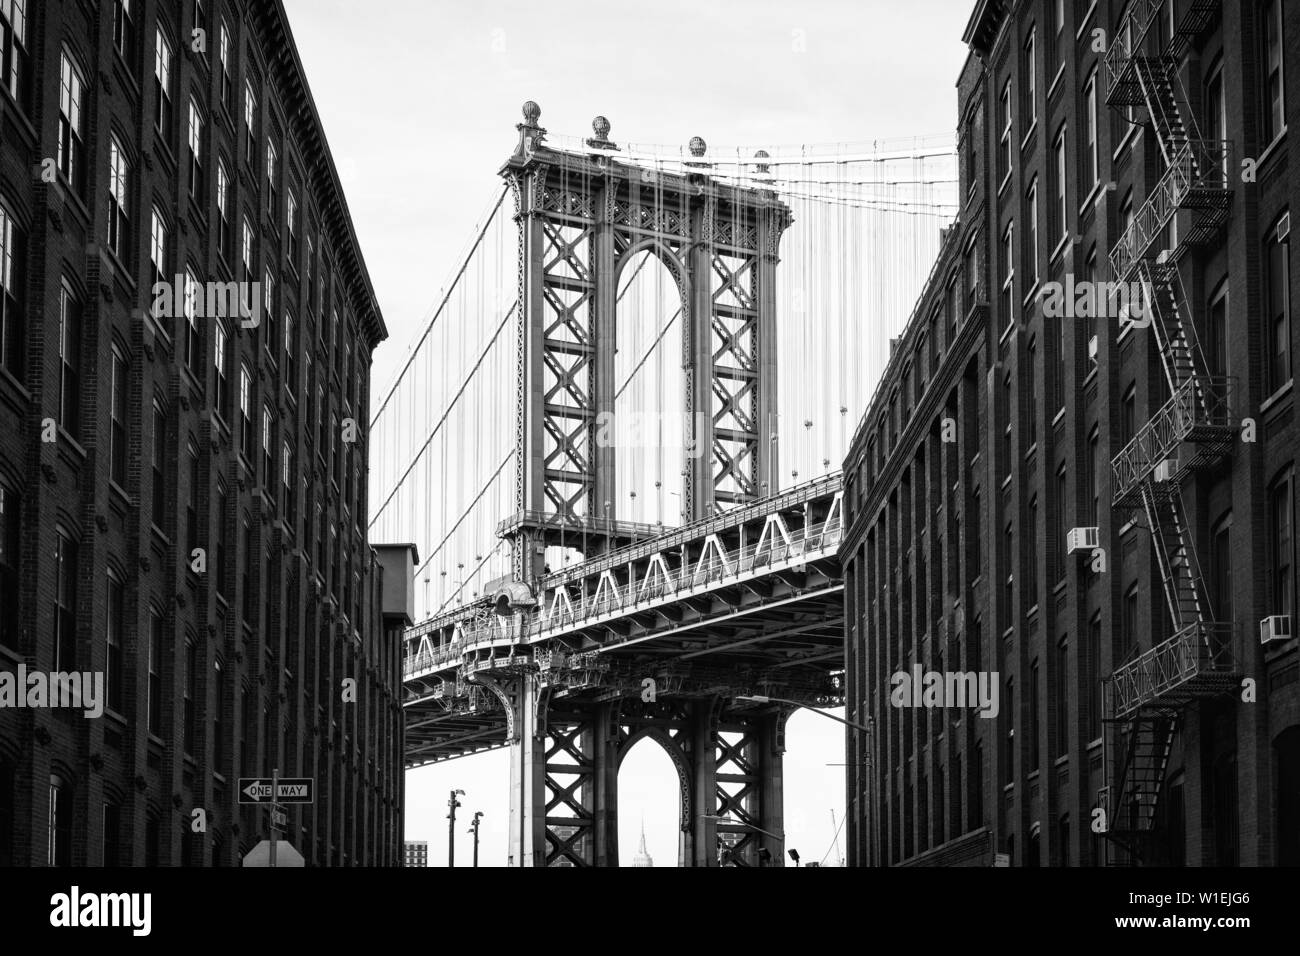 Puente de Manhattan con el Empire State Building a través de los arcos, la ciudad de Nueva York, Nueva York, Estados Unidos de América, América del Norte Foto de stock